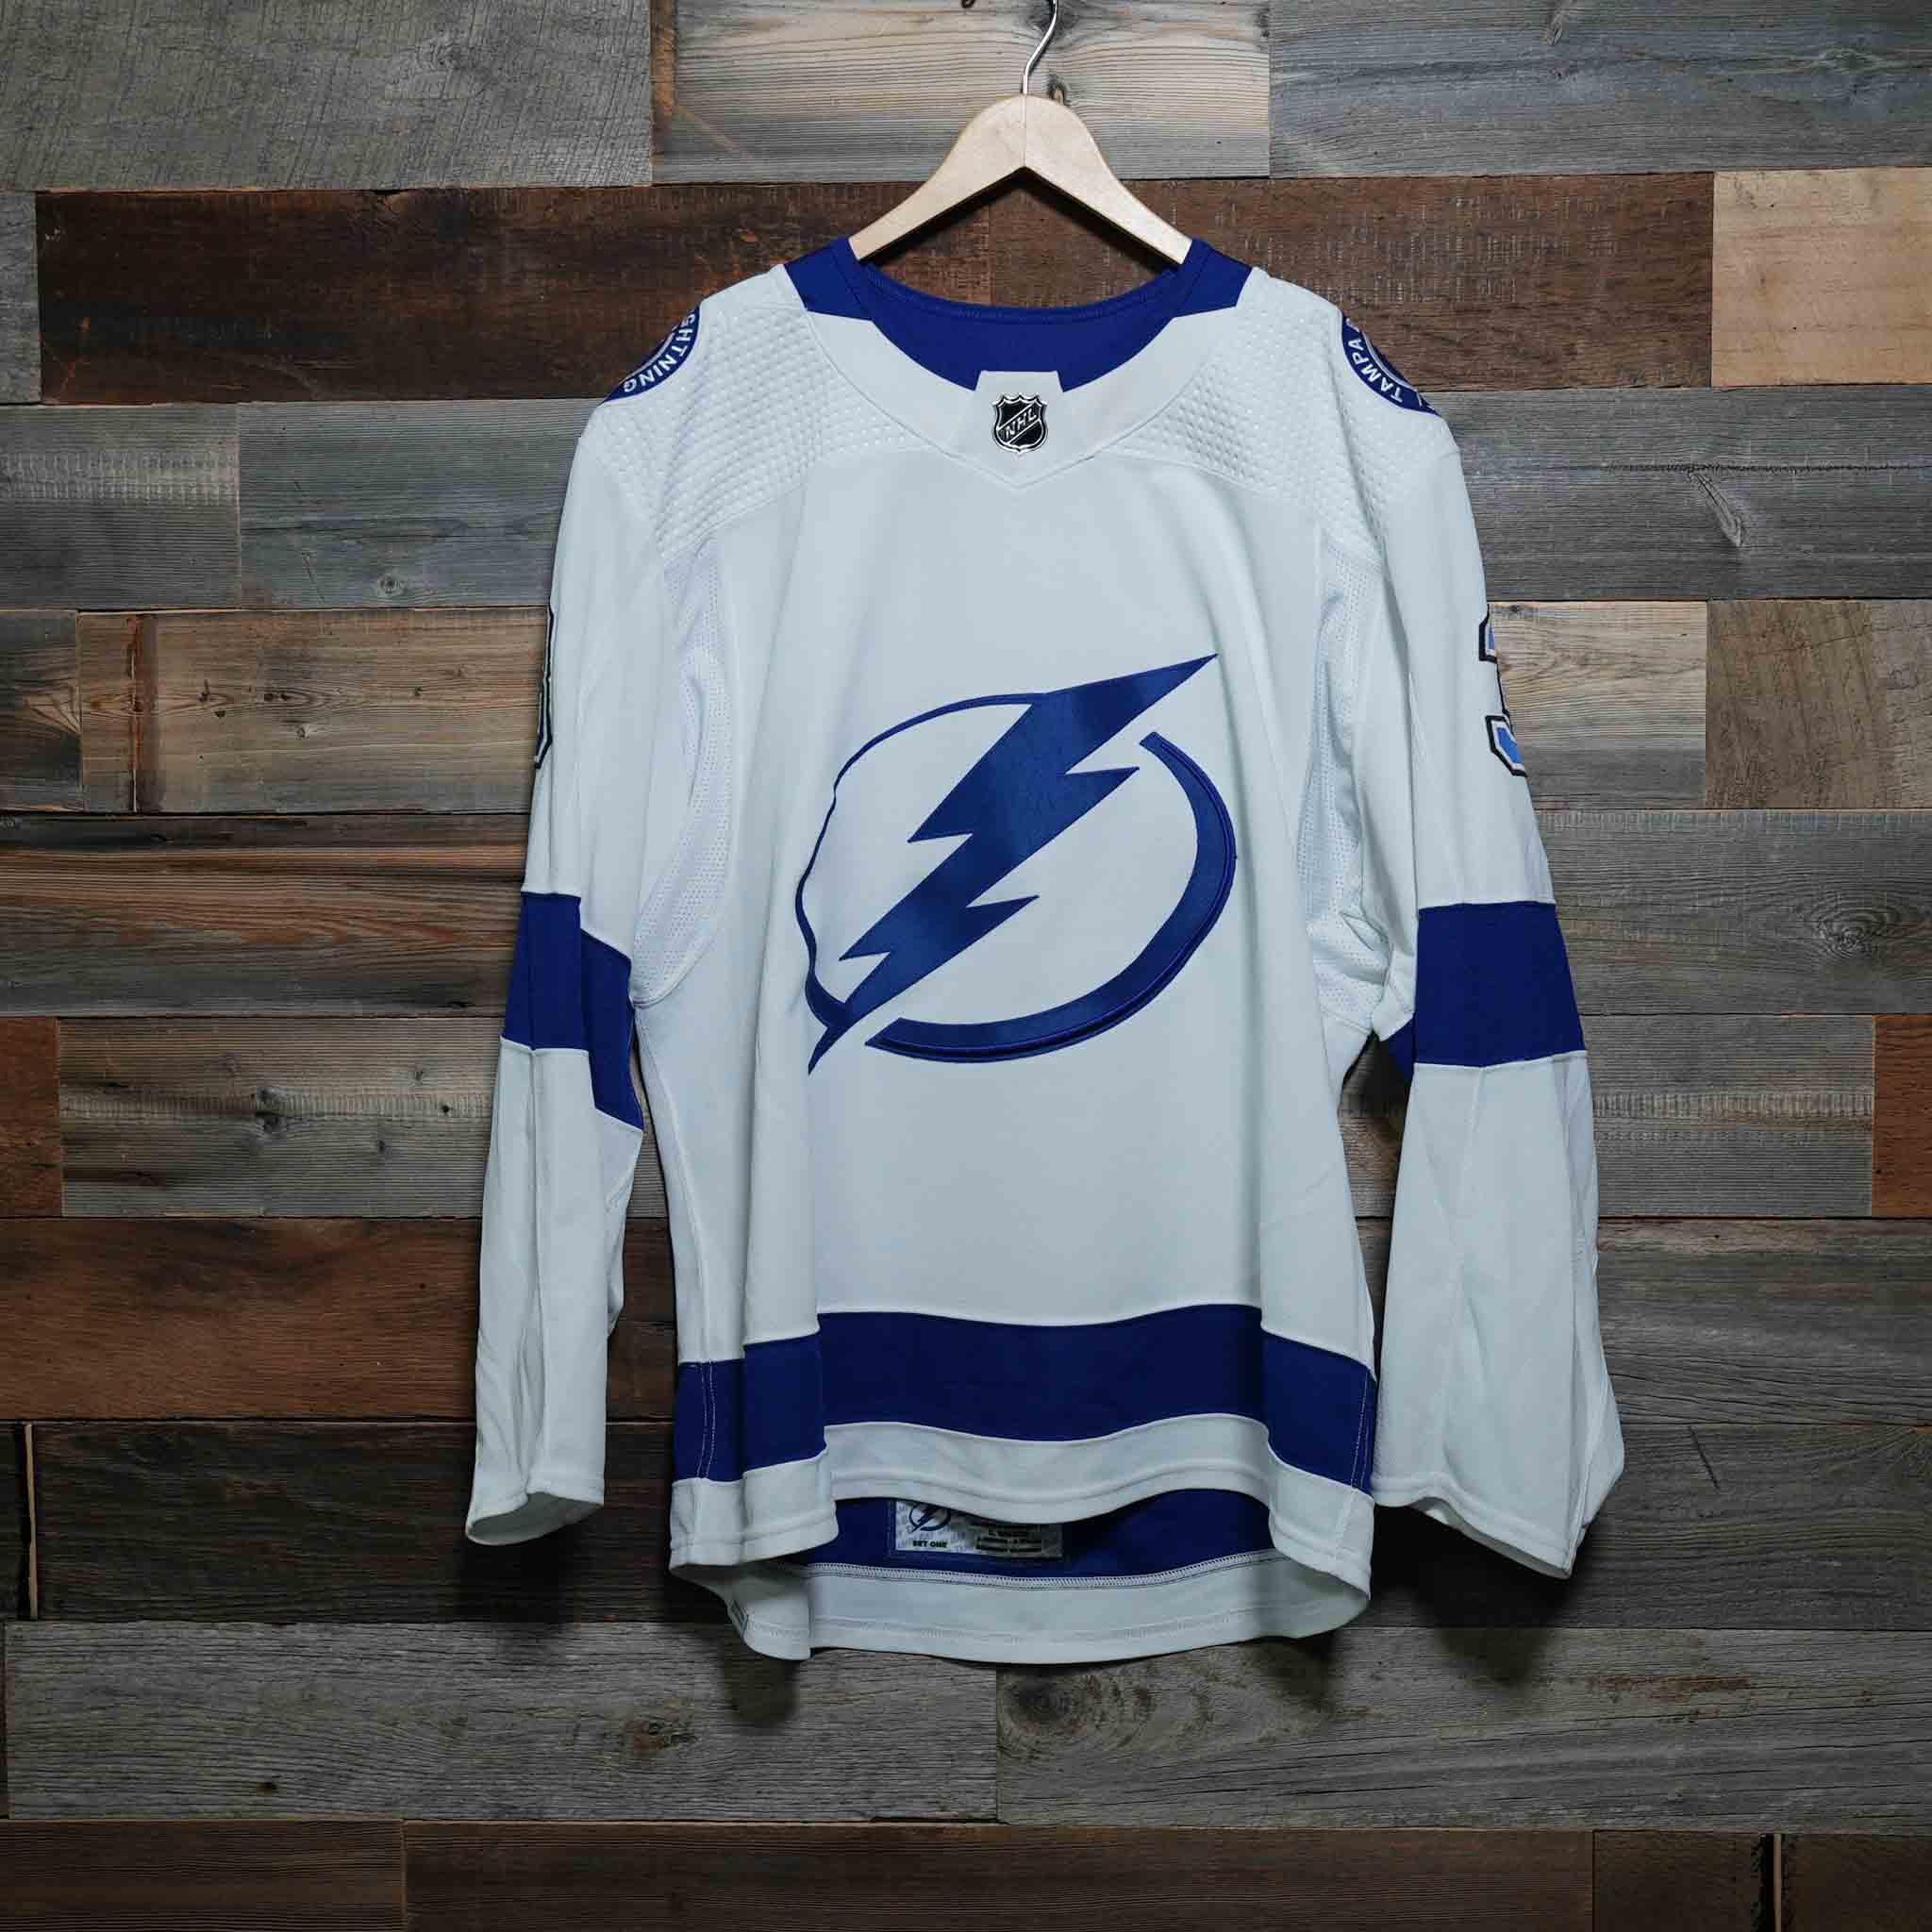 Lightning captain's legendary jersey